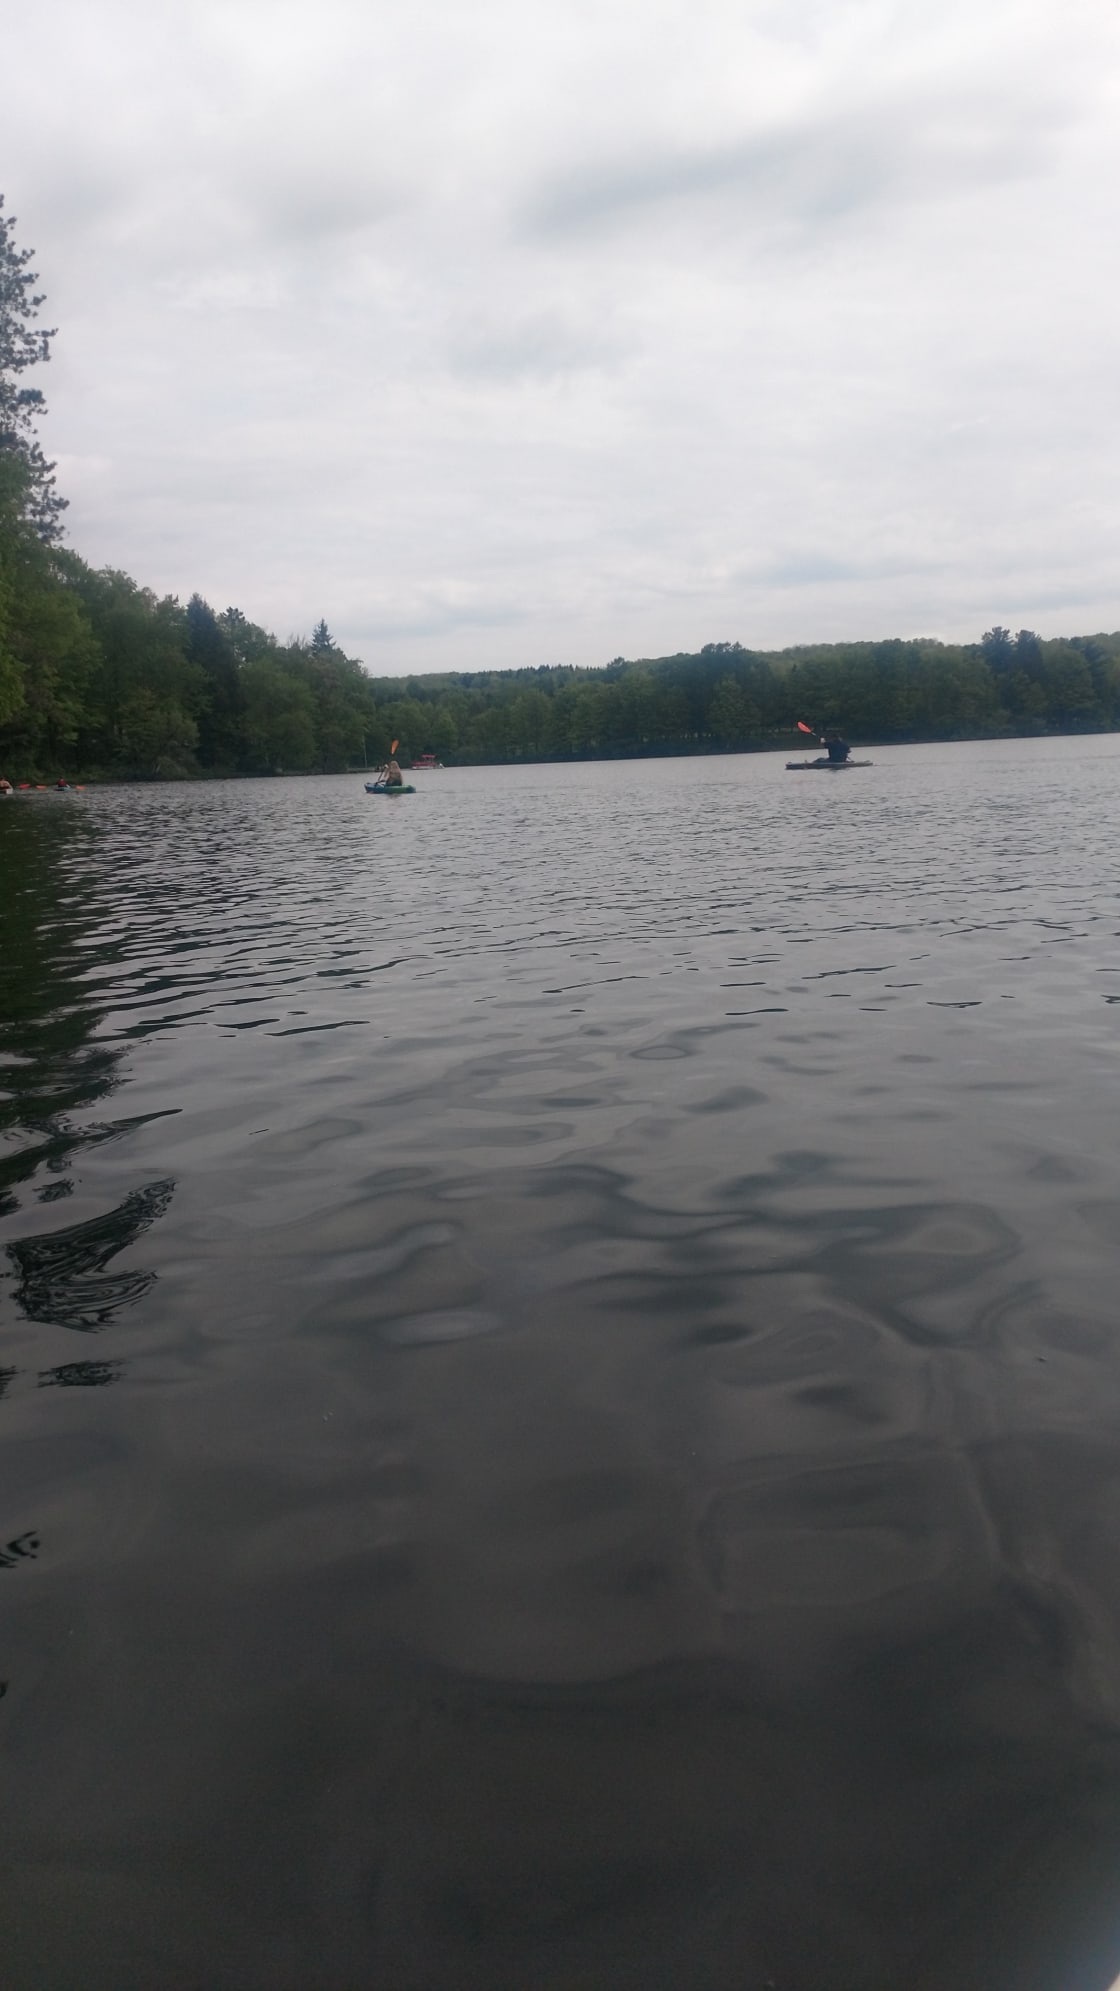 Kayaking on a nearby lake